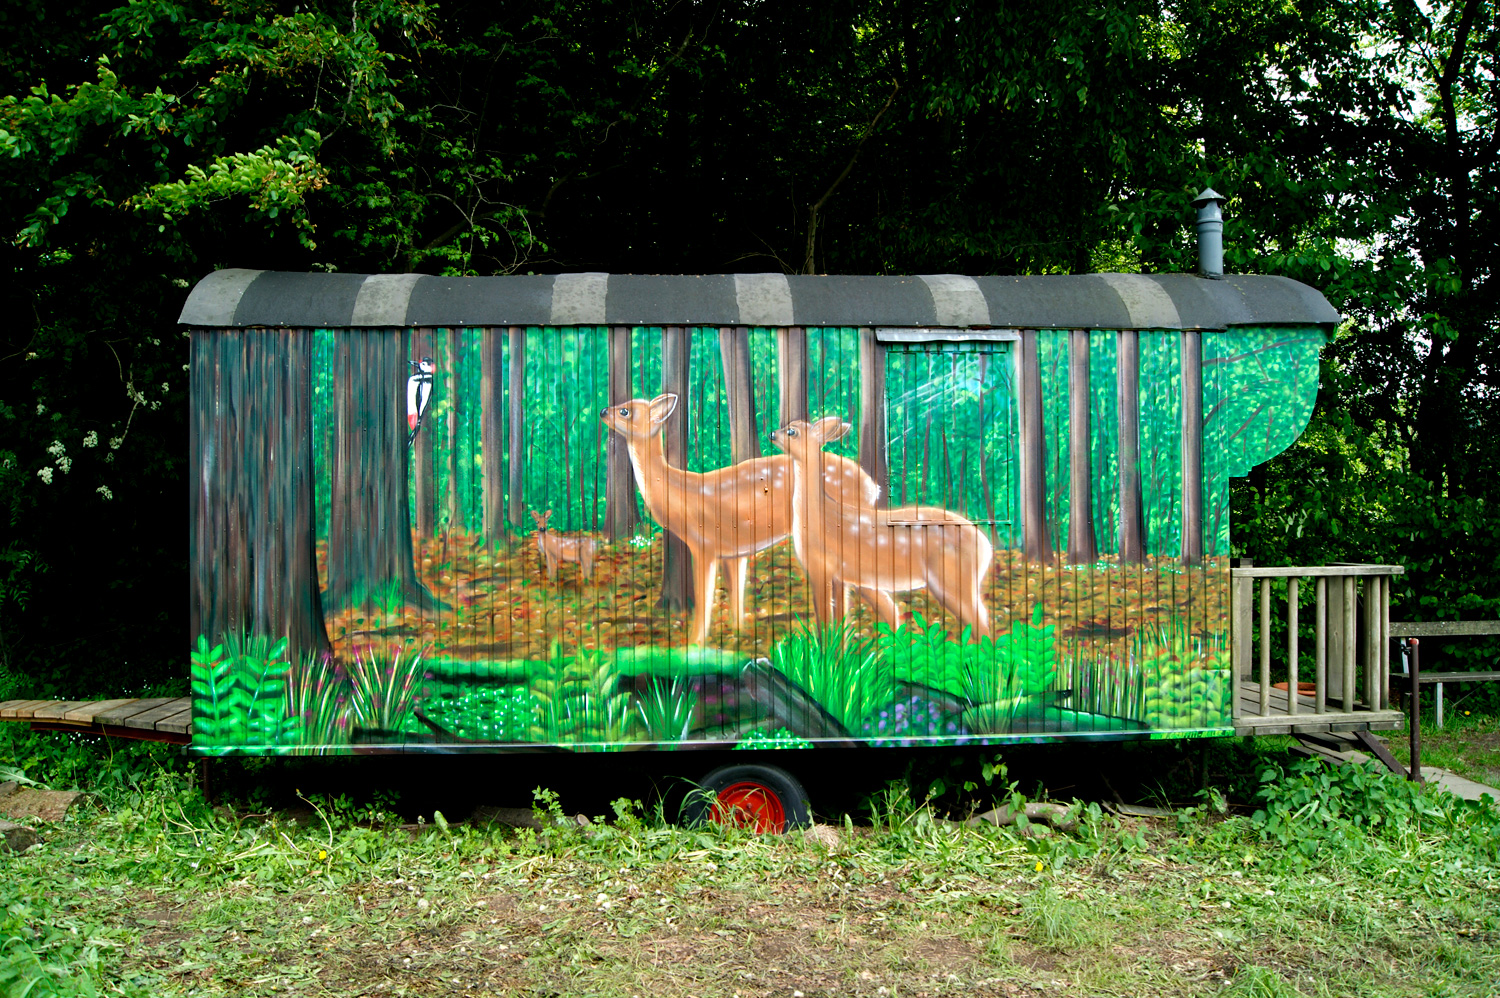 Graffiti auf Bauwagen für Waldkindergarten